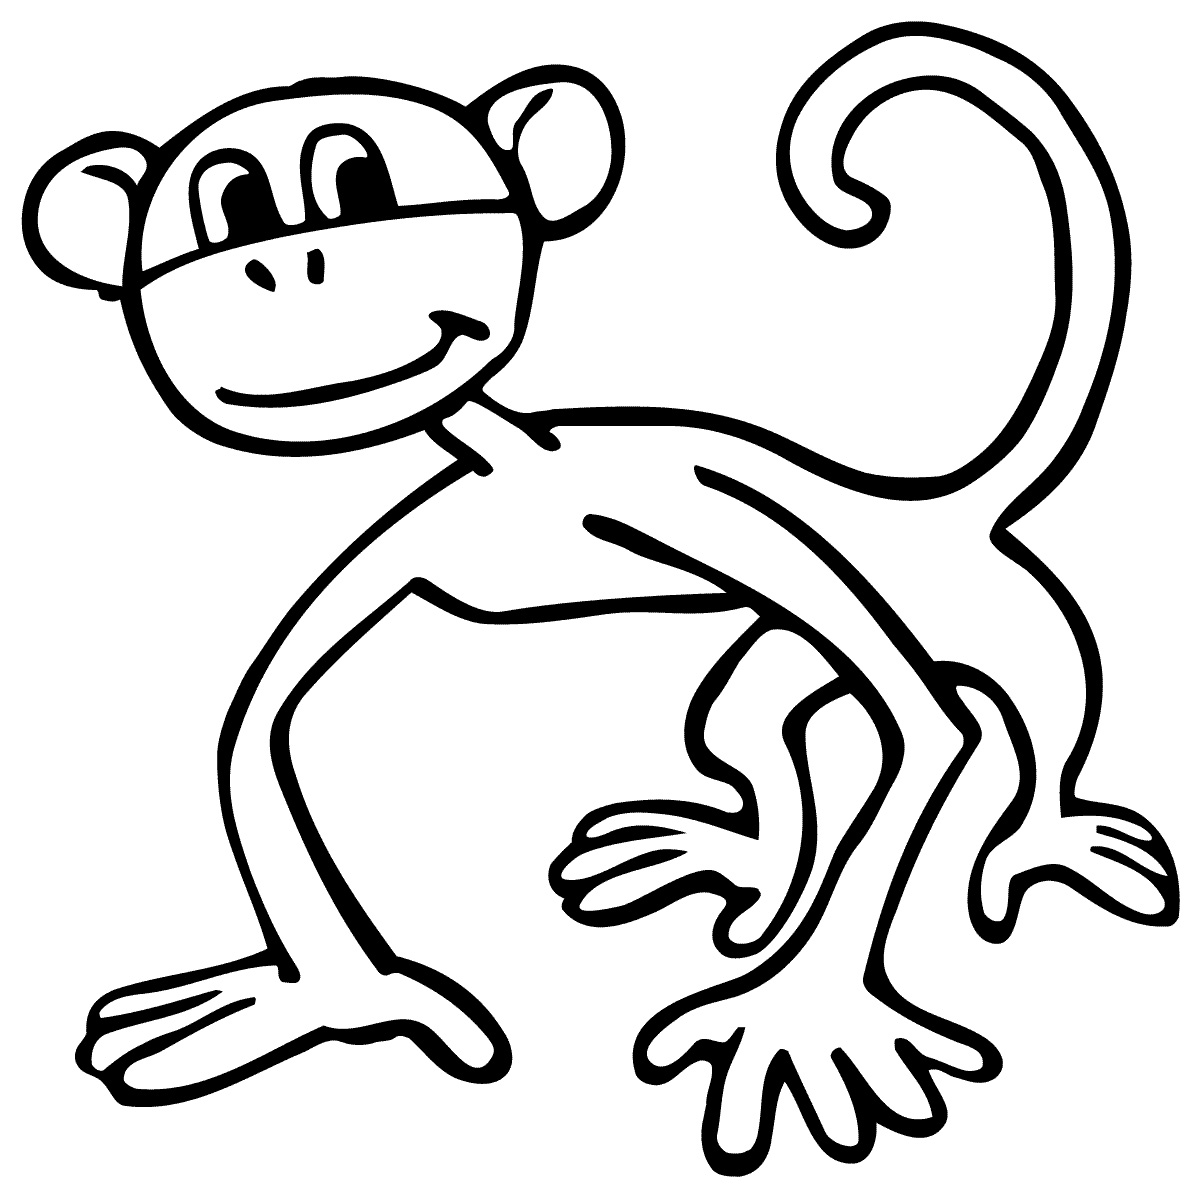 Cartoon Monkey Drawings - ClipArt Best